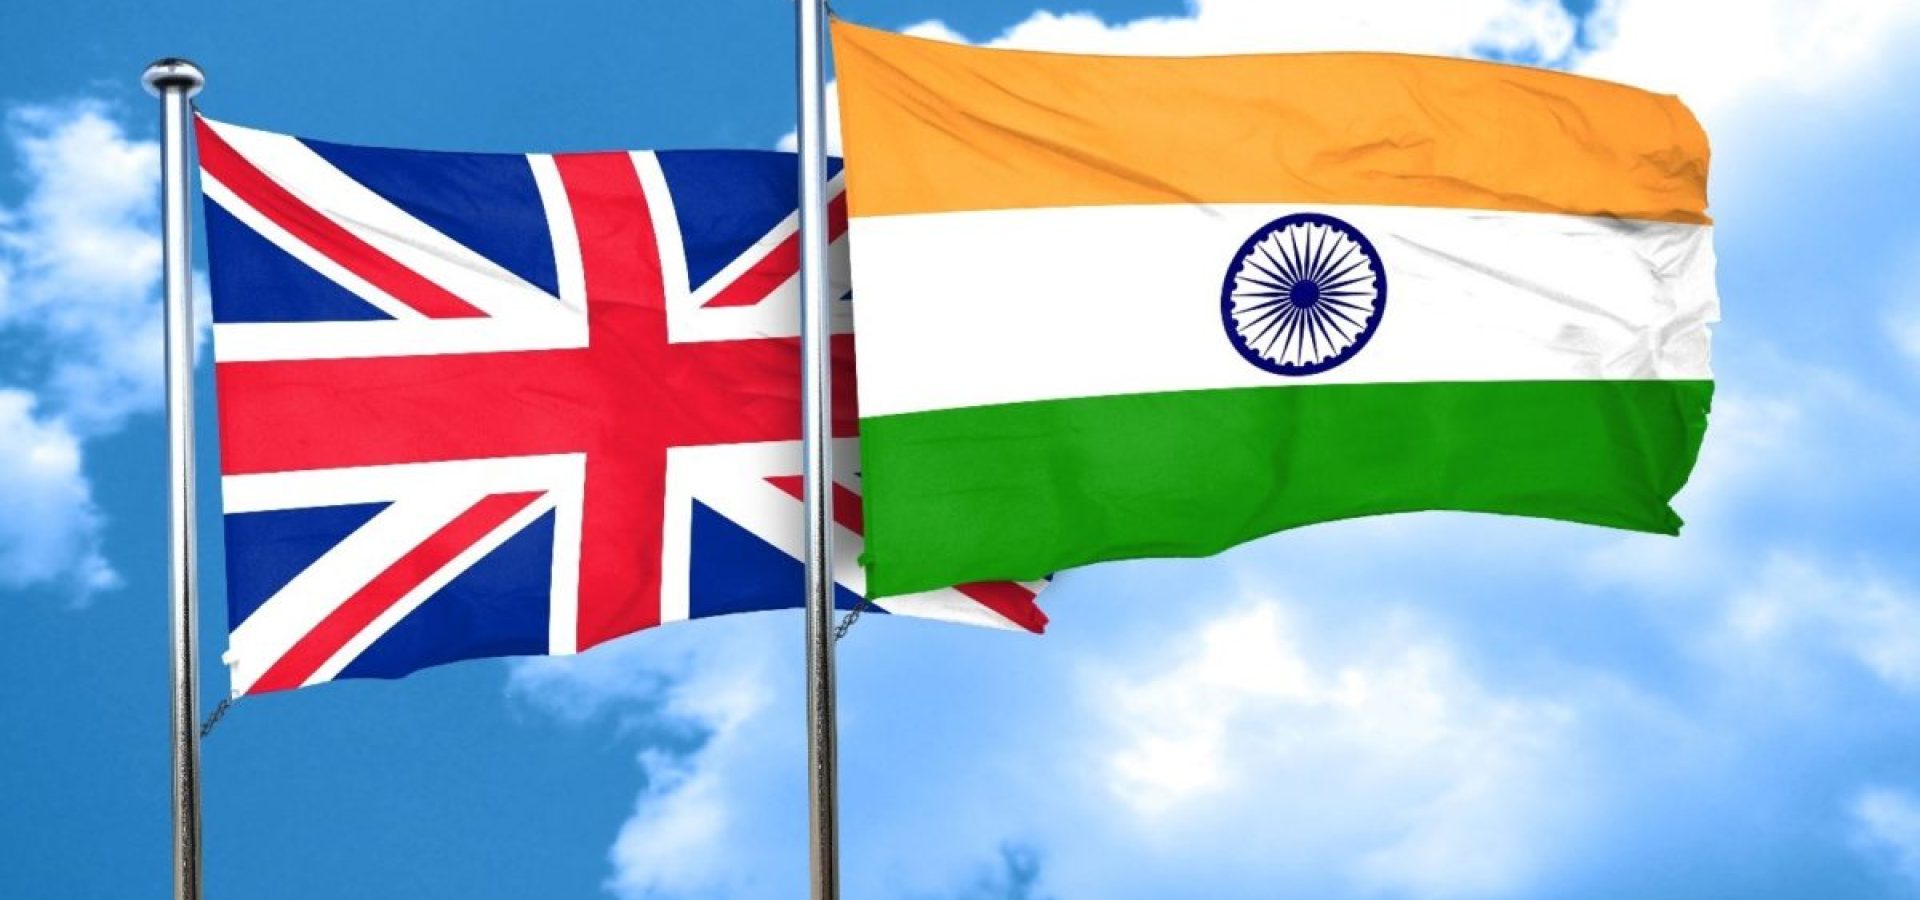 india and britain